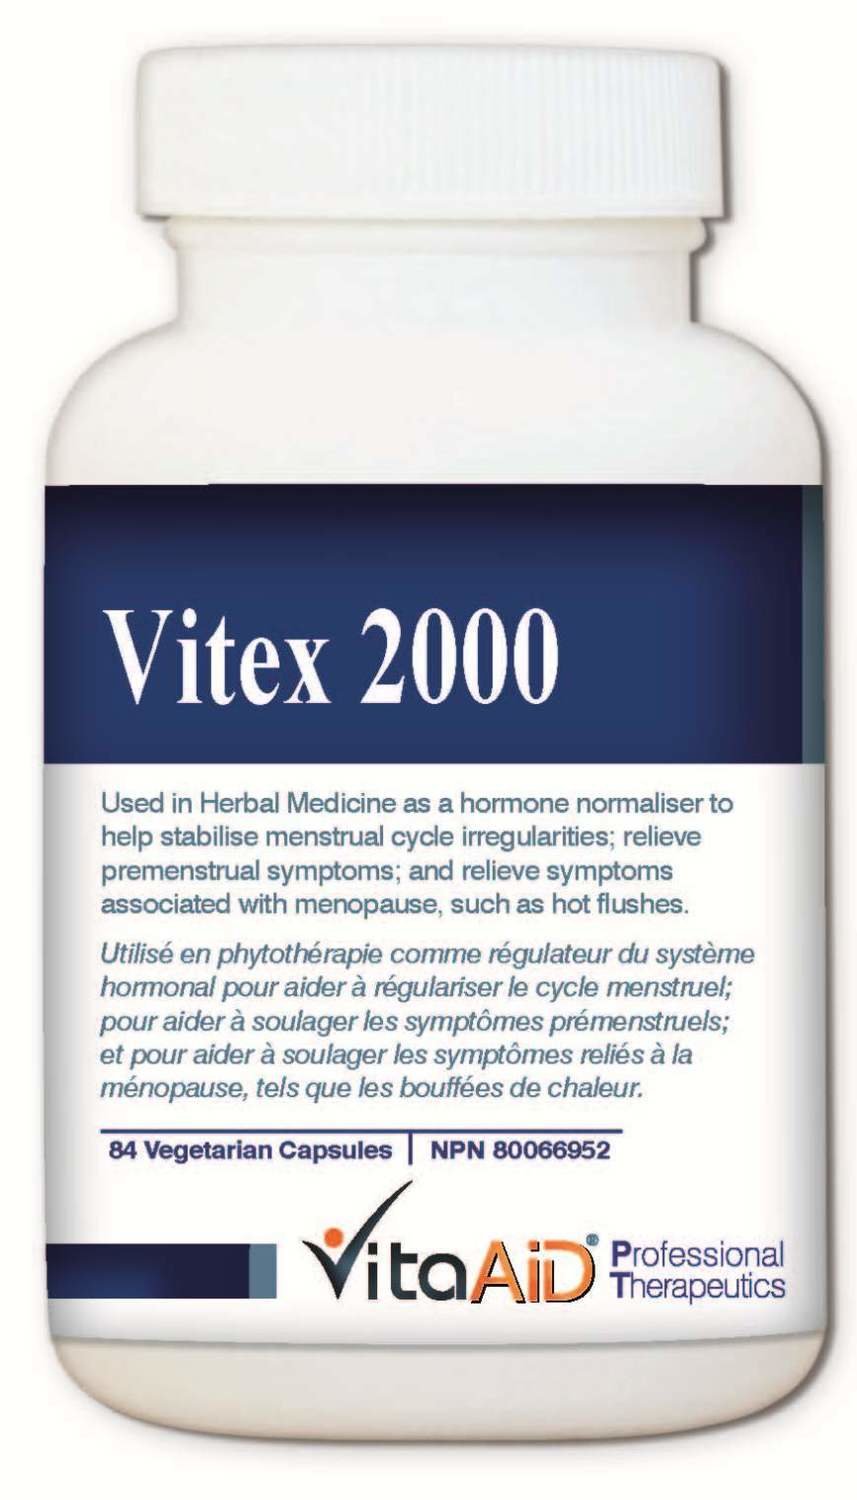 Vitex 2000 by Vita Aid